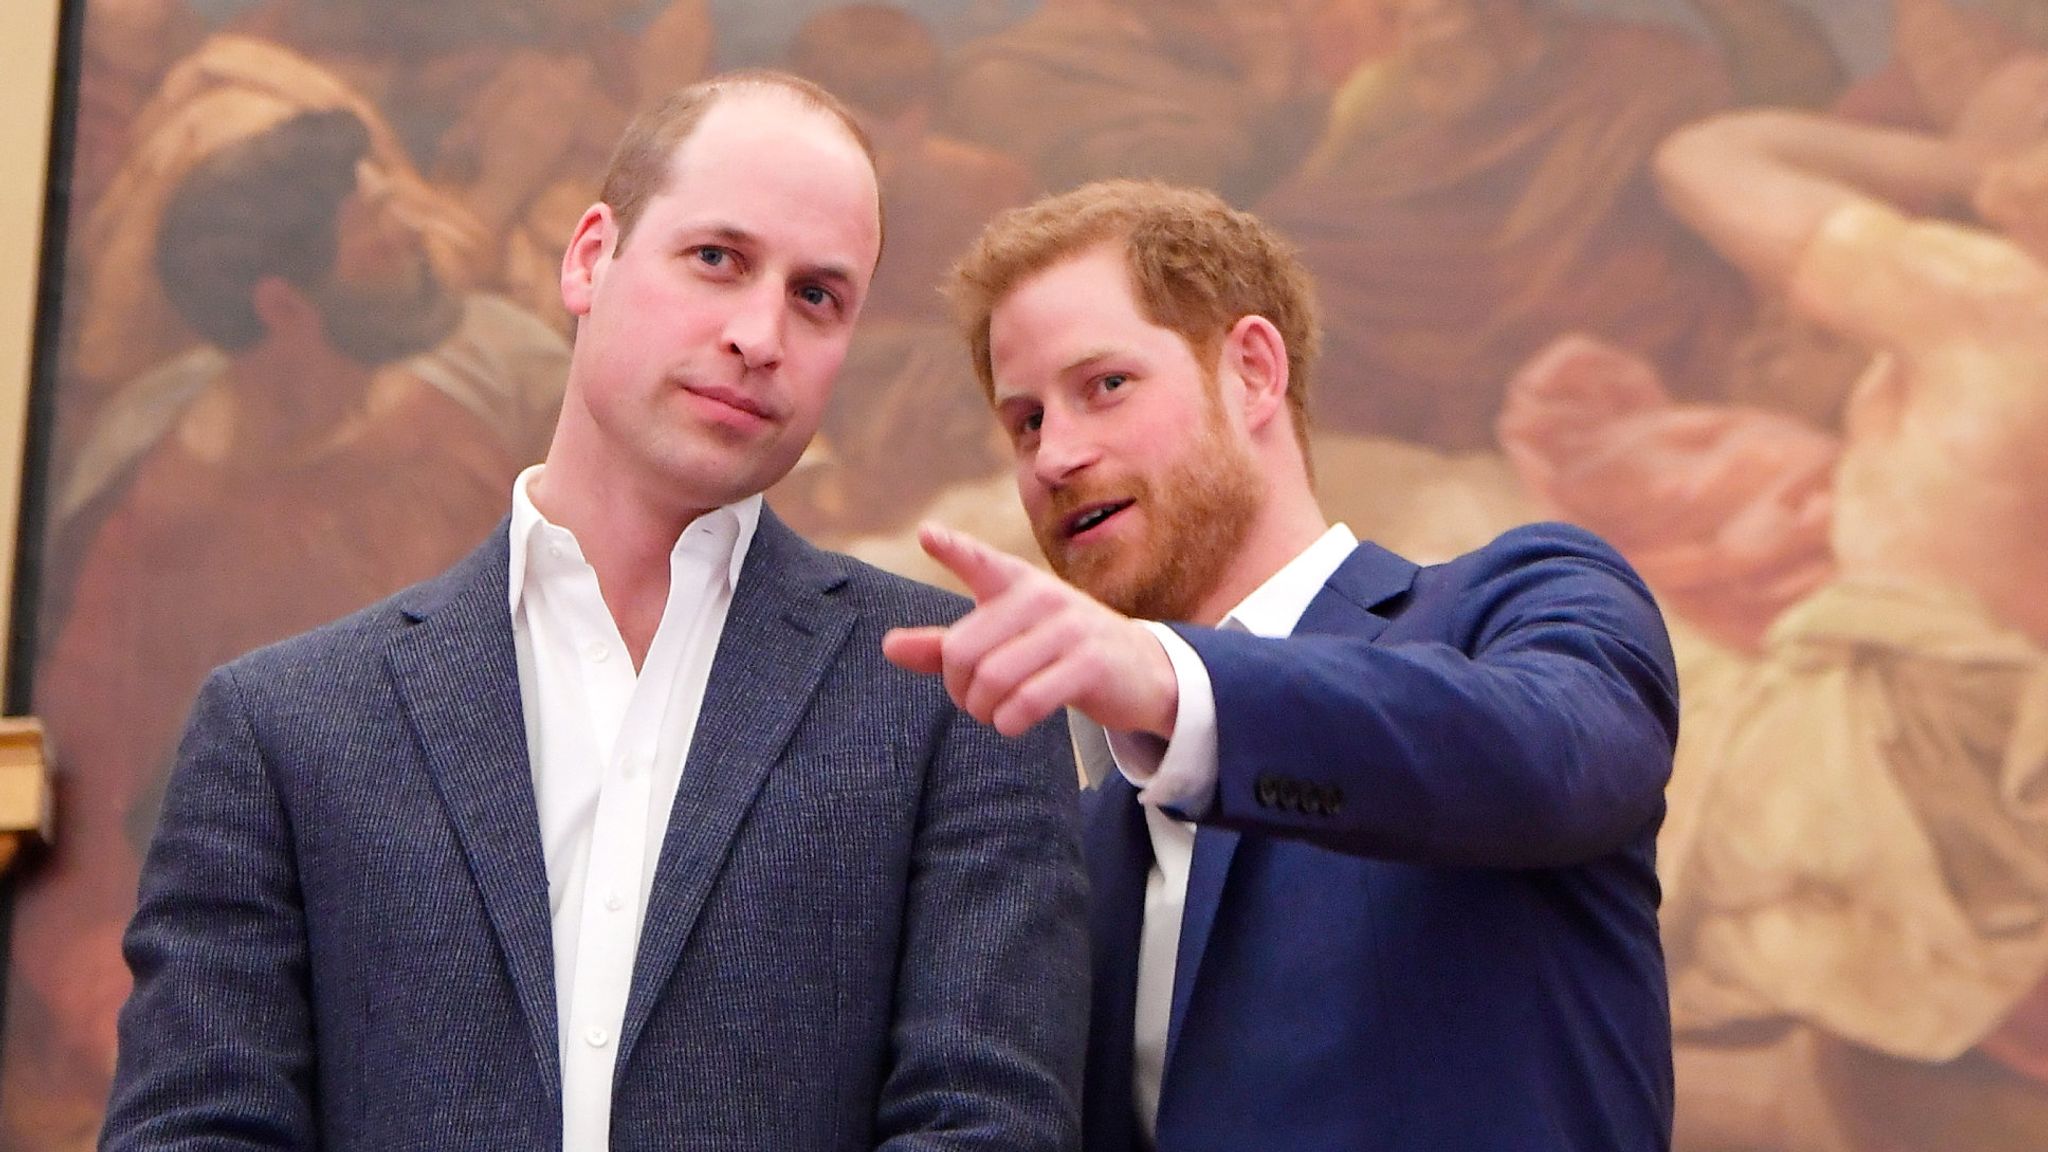 Të përçarë prej kohësh, Princ Harry dhe William rregullojnë marrëdhënien? – Abc News